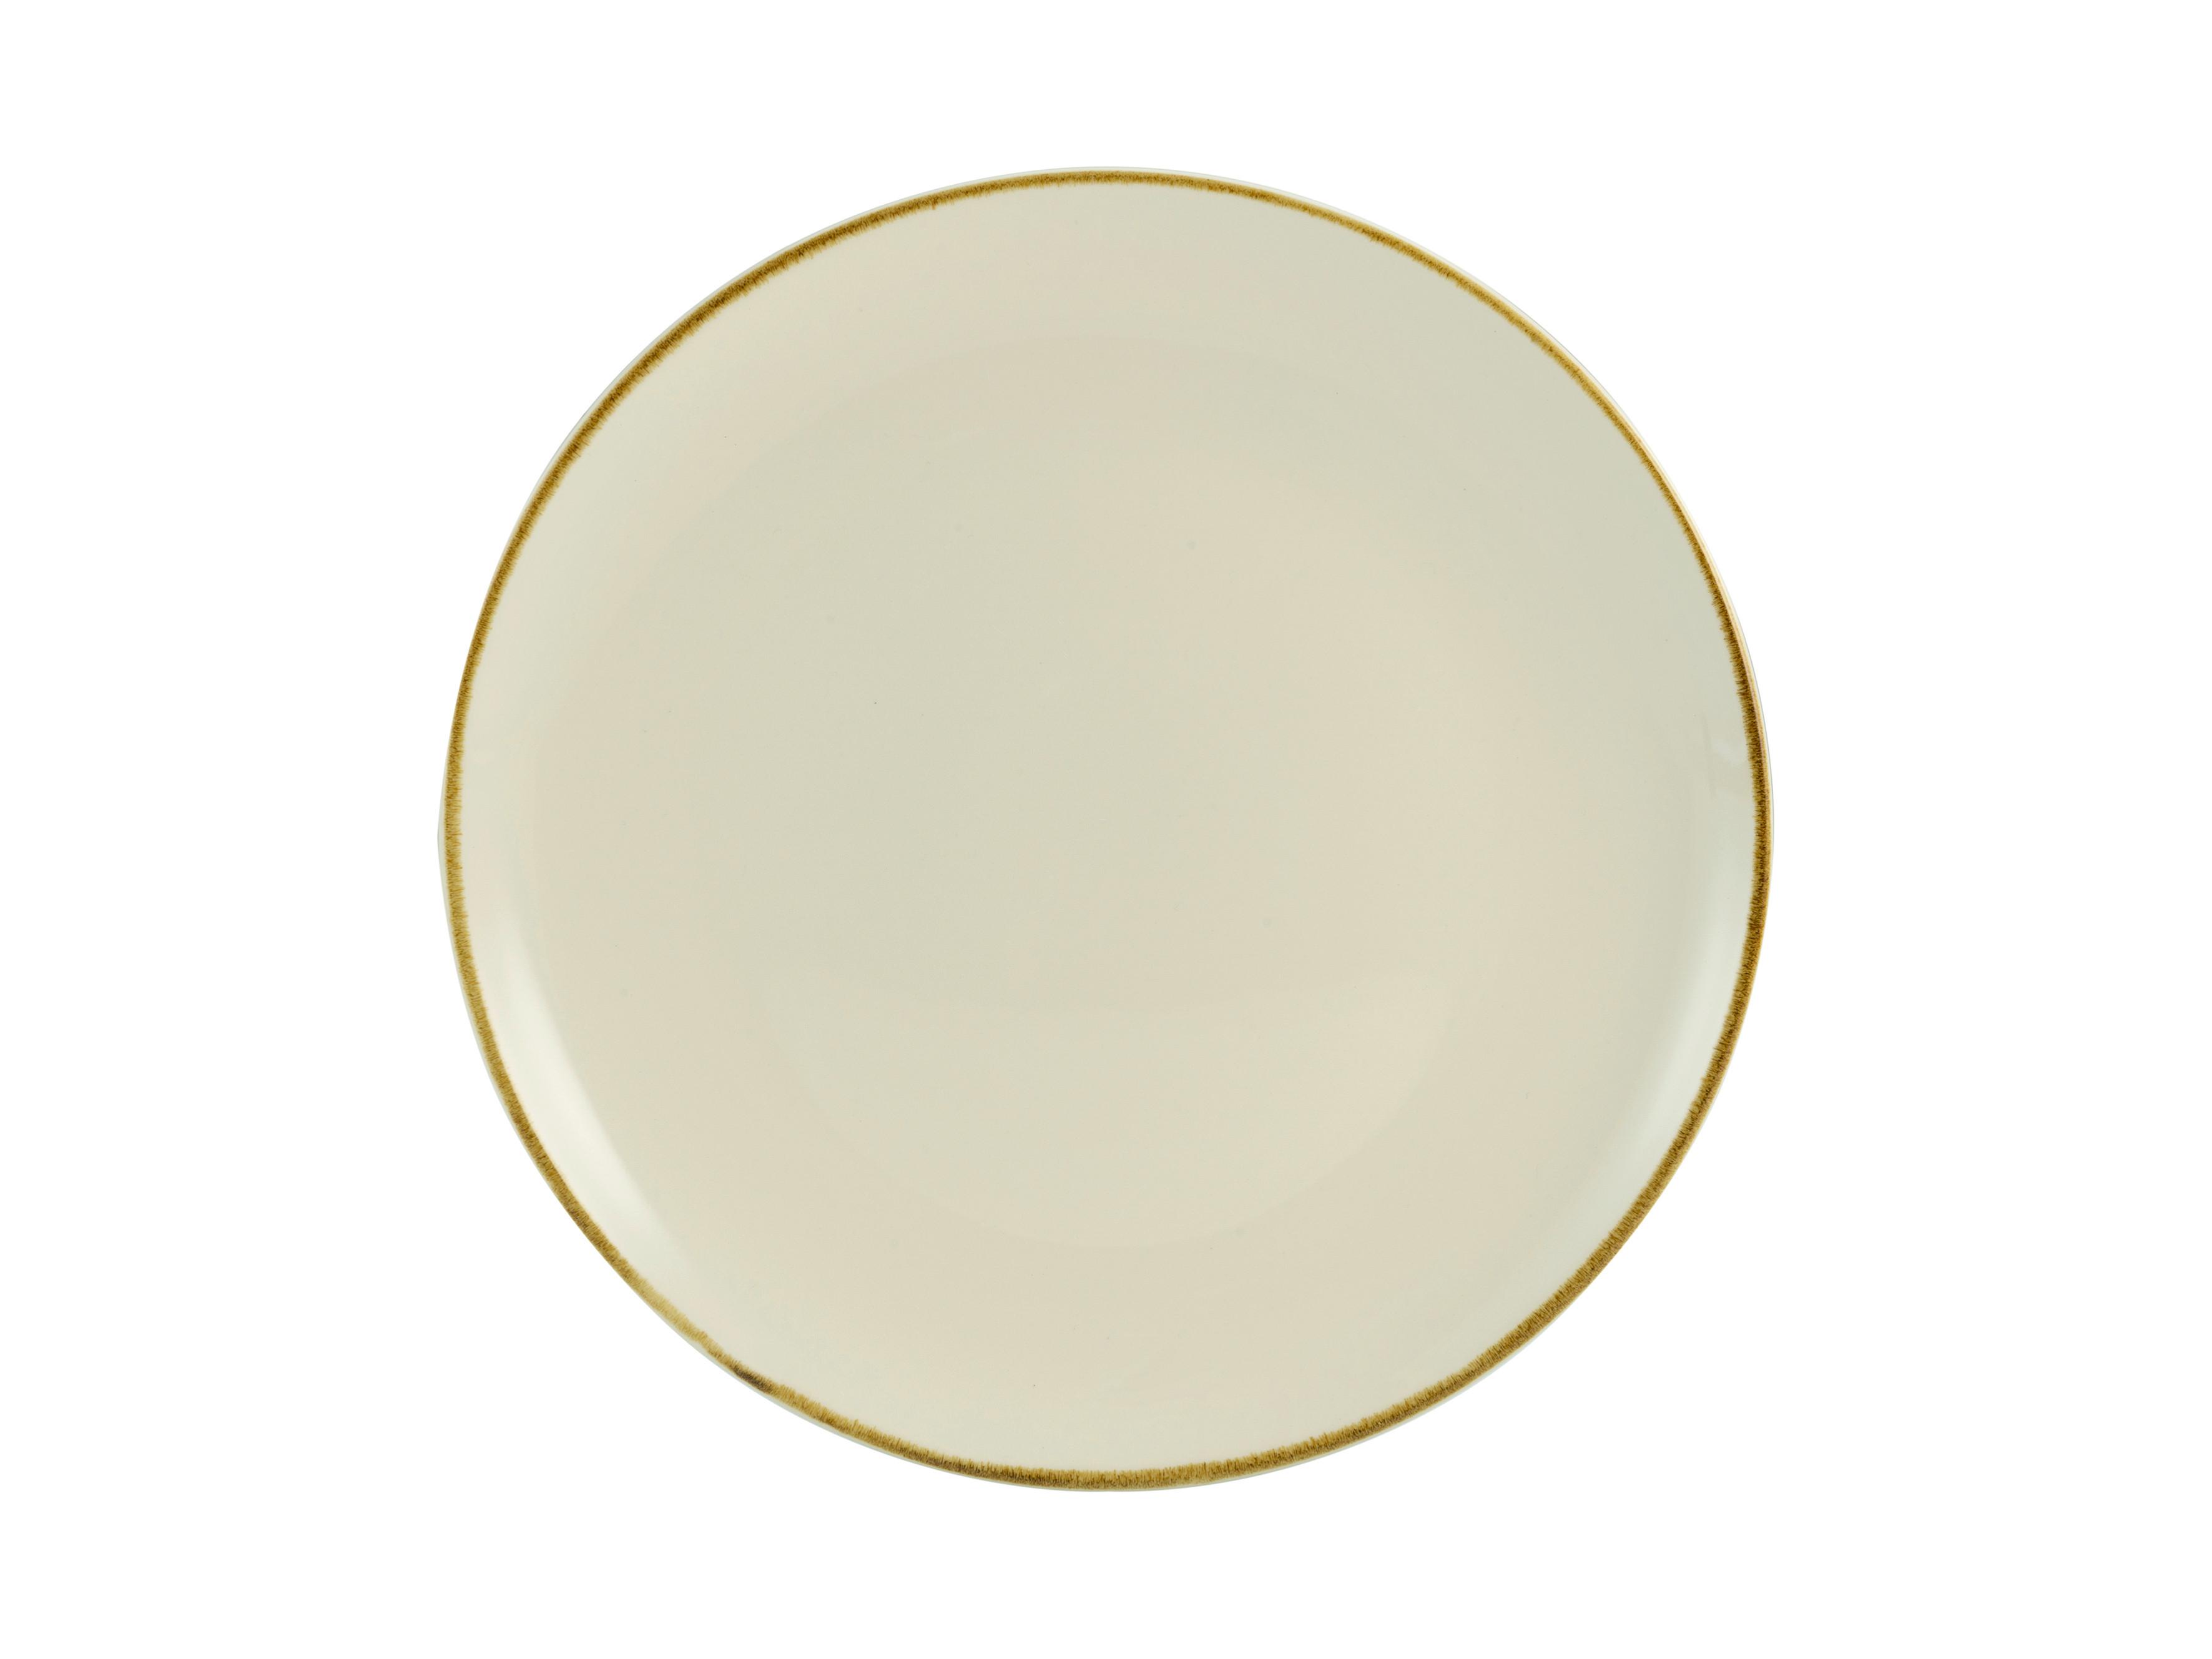 TALERZ DESEROWY LINEN - kremowy/biały, ceramika (22/22/2,5cm) - Premium Living